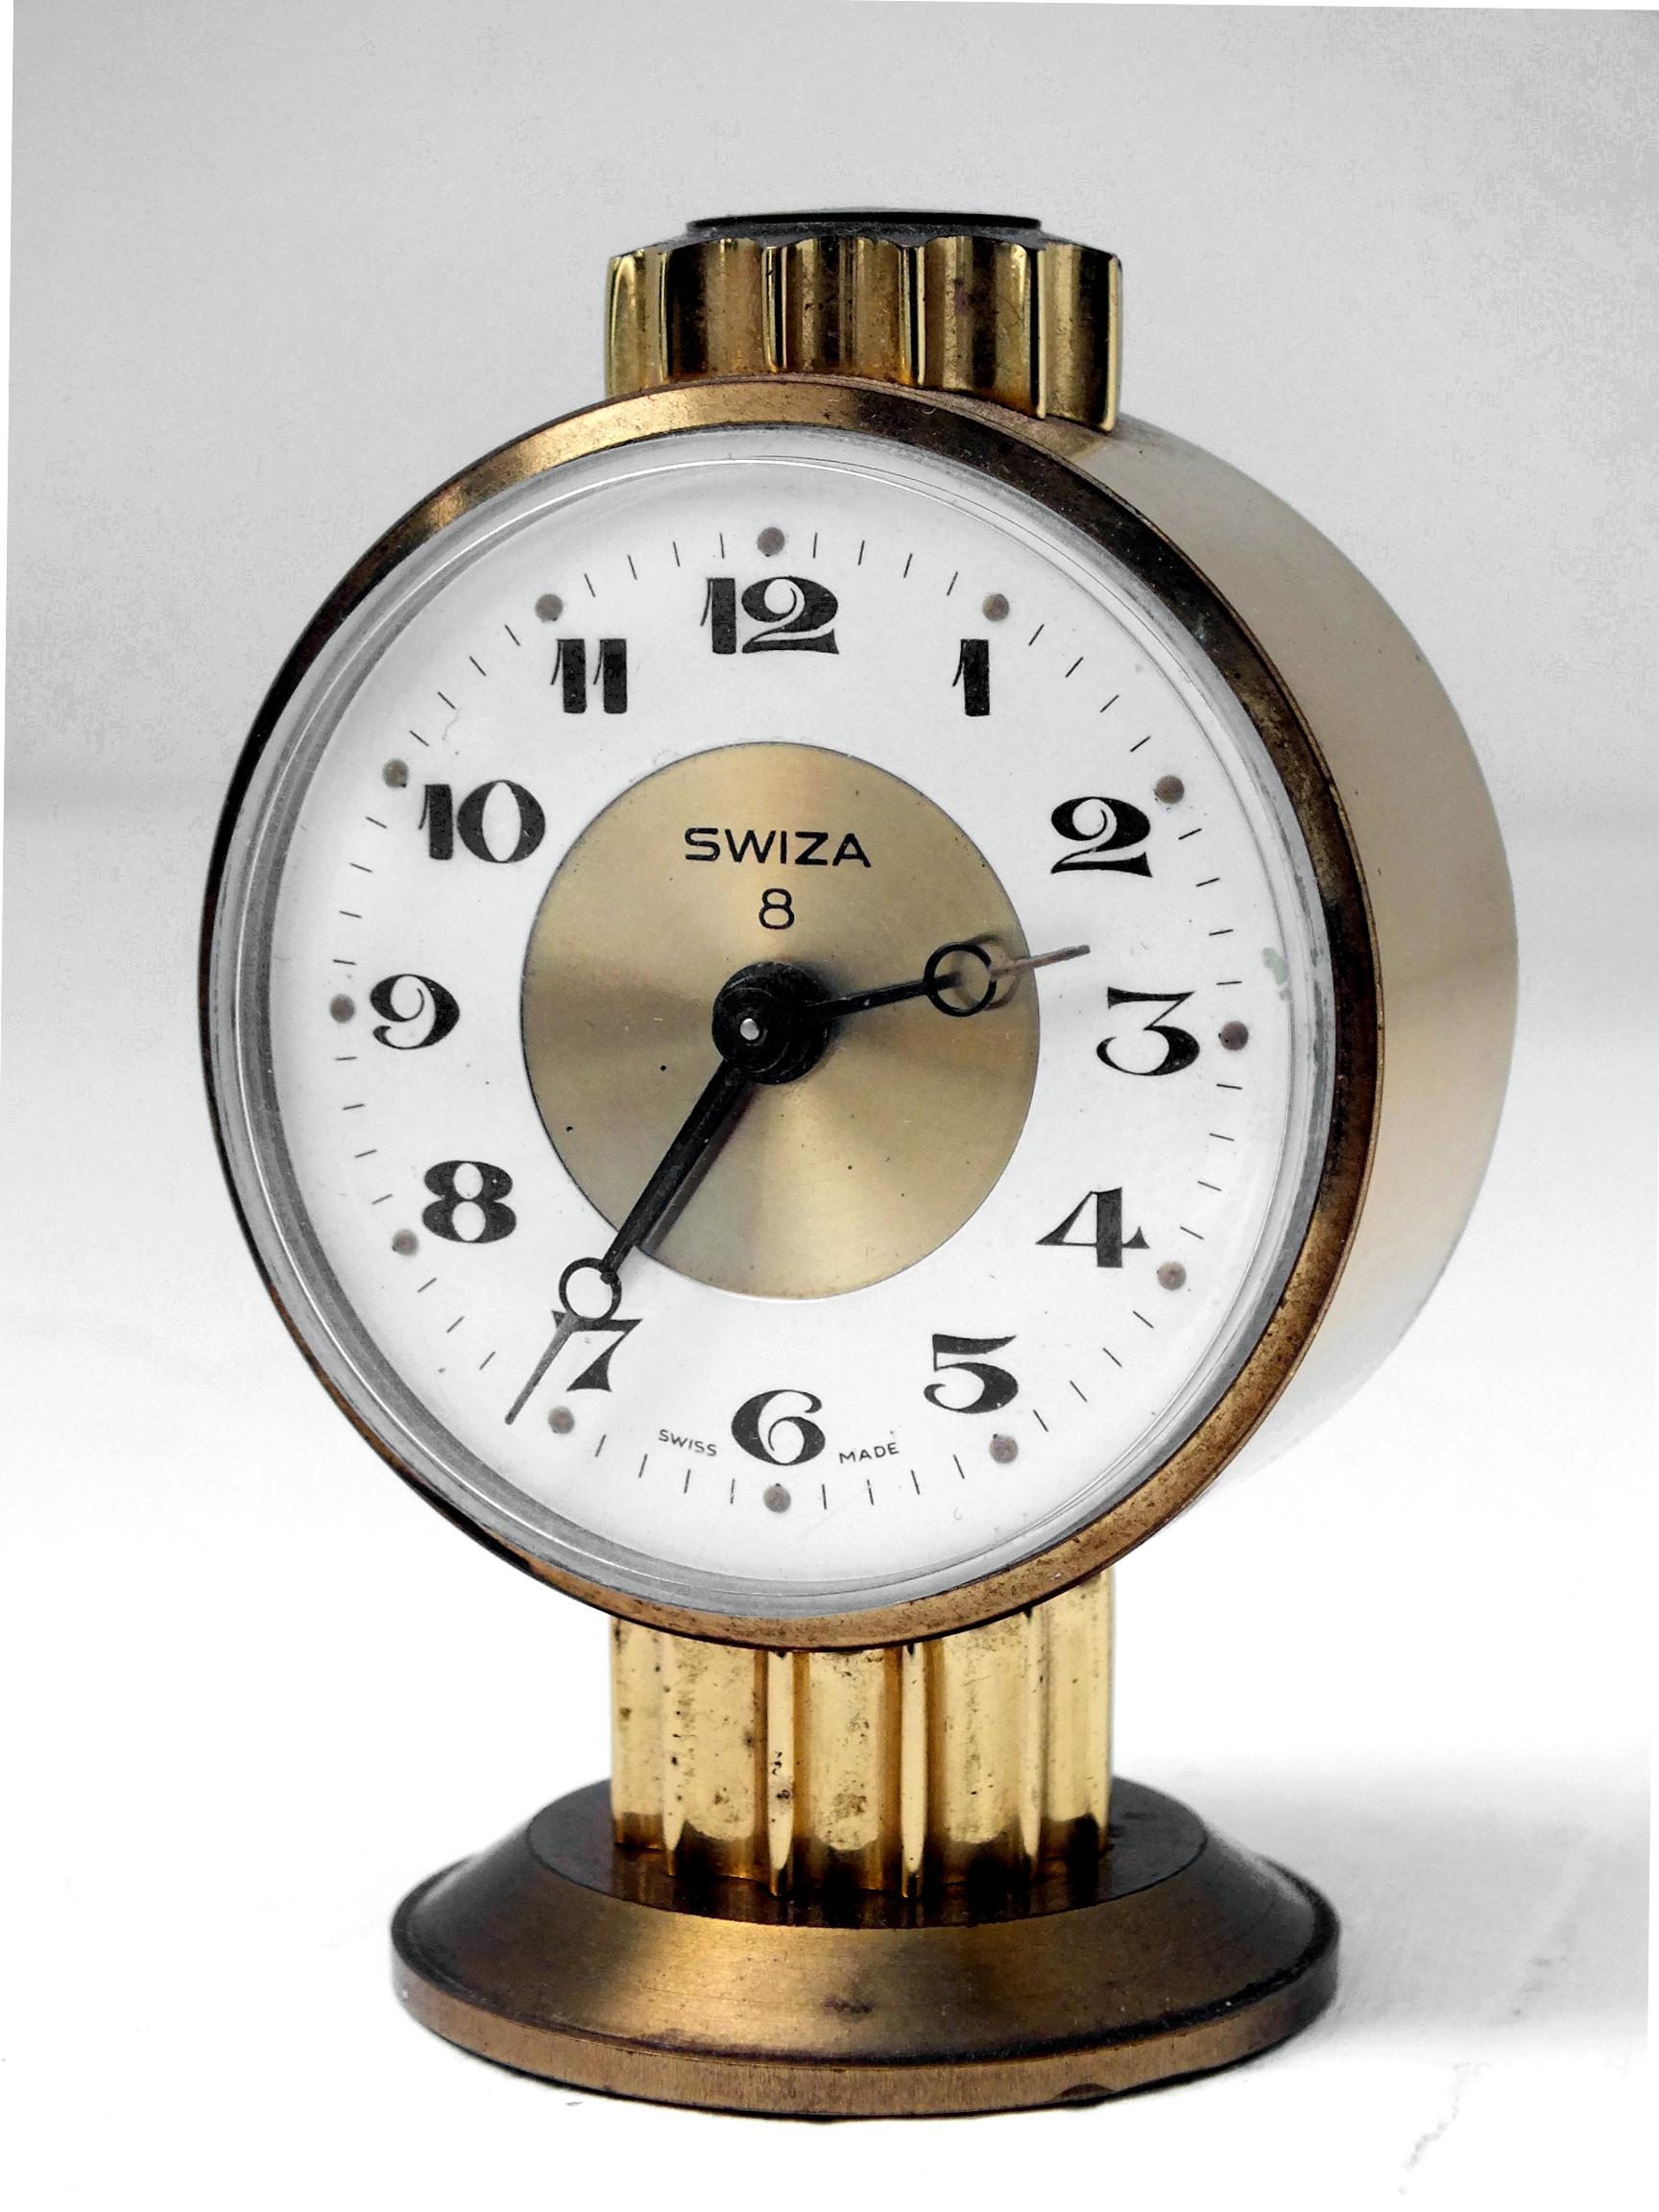 swiza 8 clock price